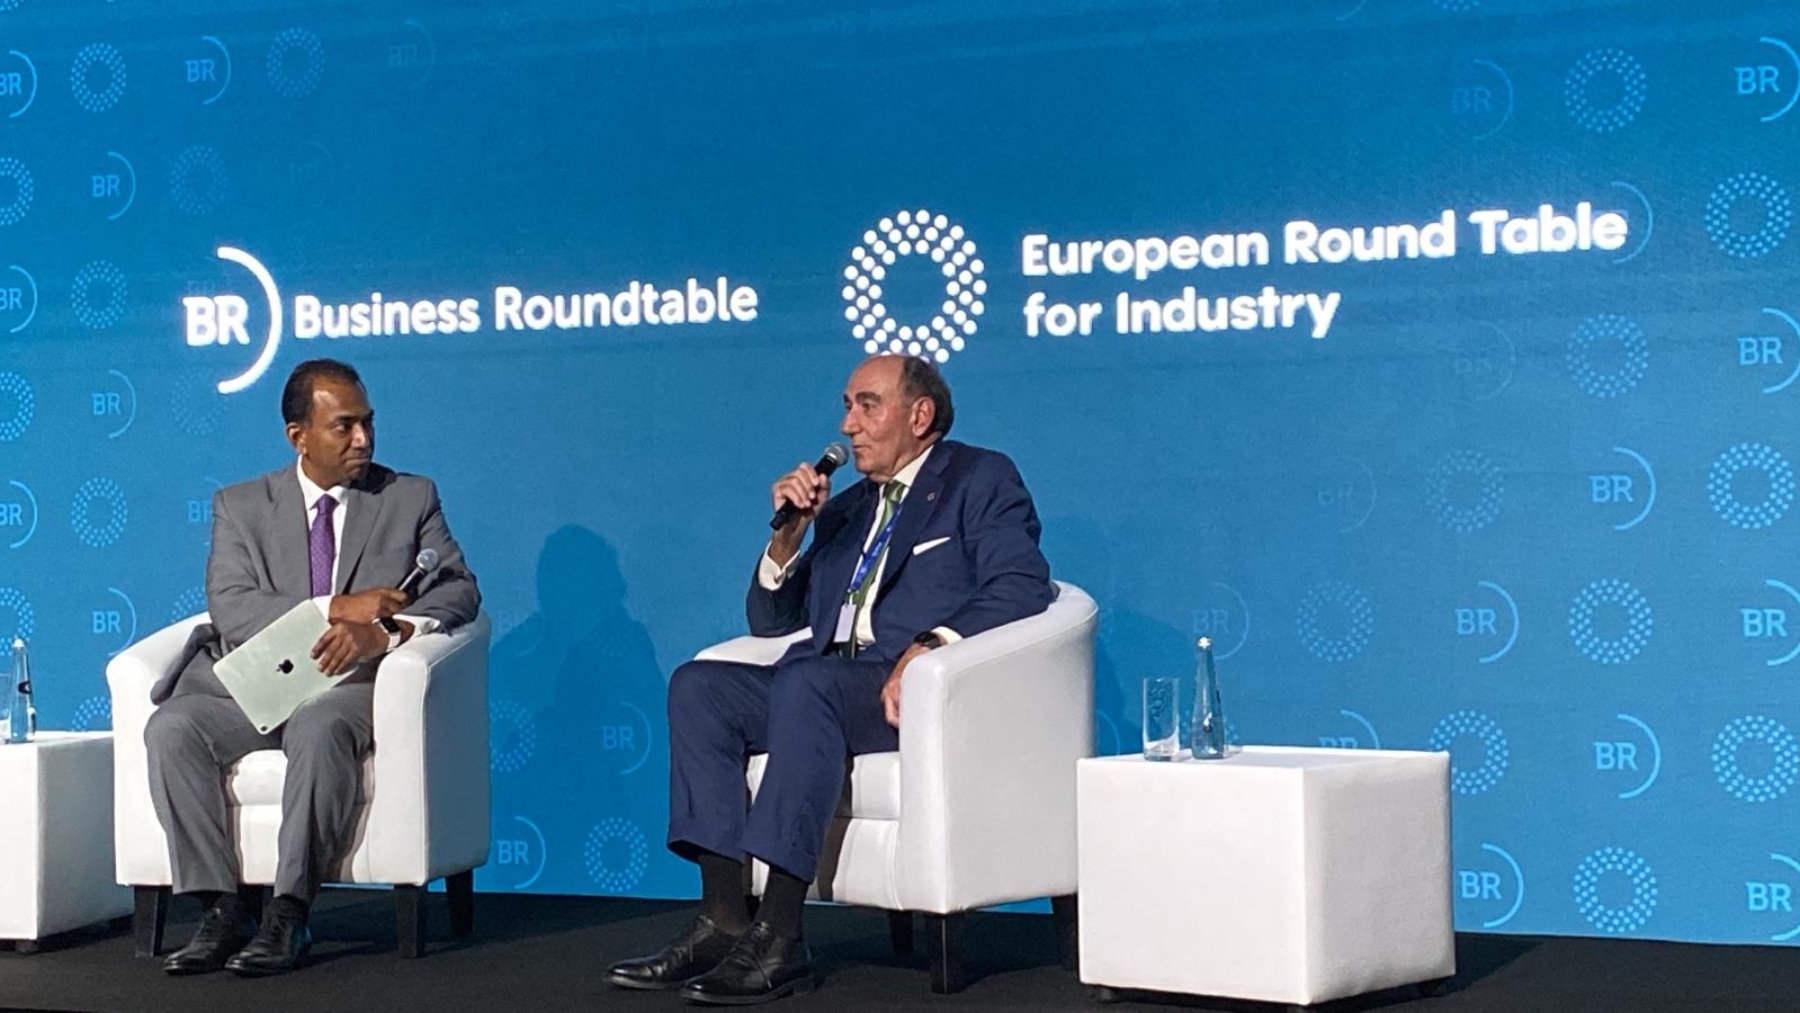 El presidente de Iberdrola destaca que lograr el objetivo de triplicar las renovables requerirá inversiones de 2,2 billones de euros al año